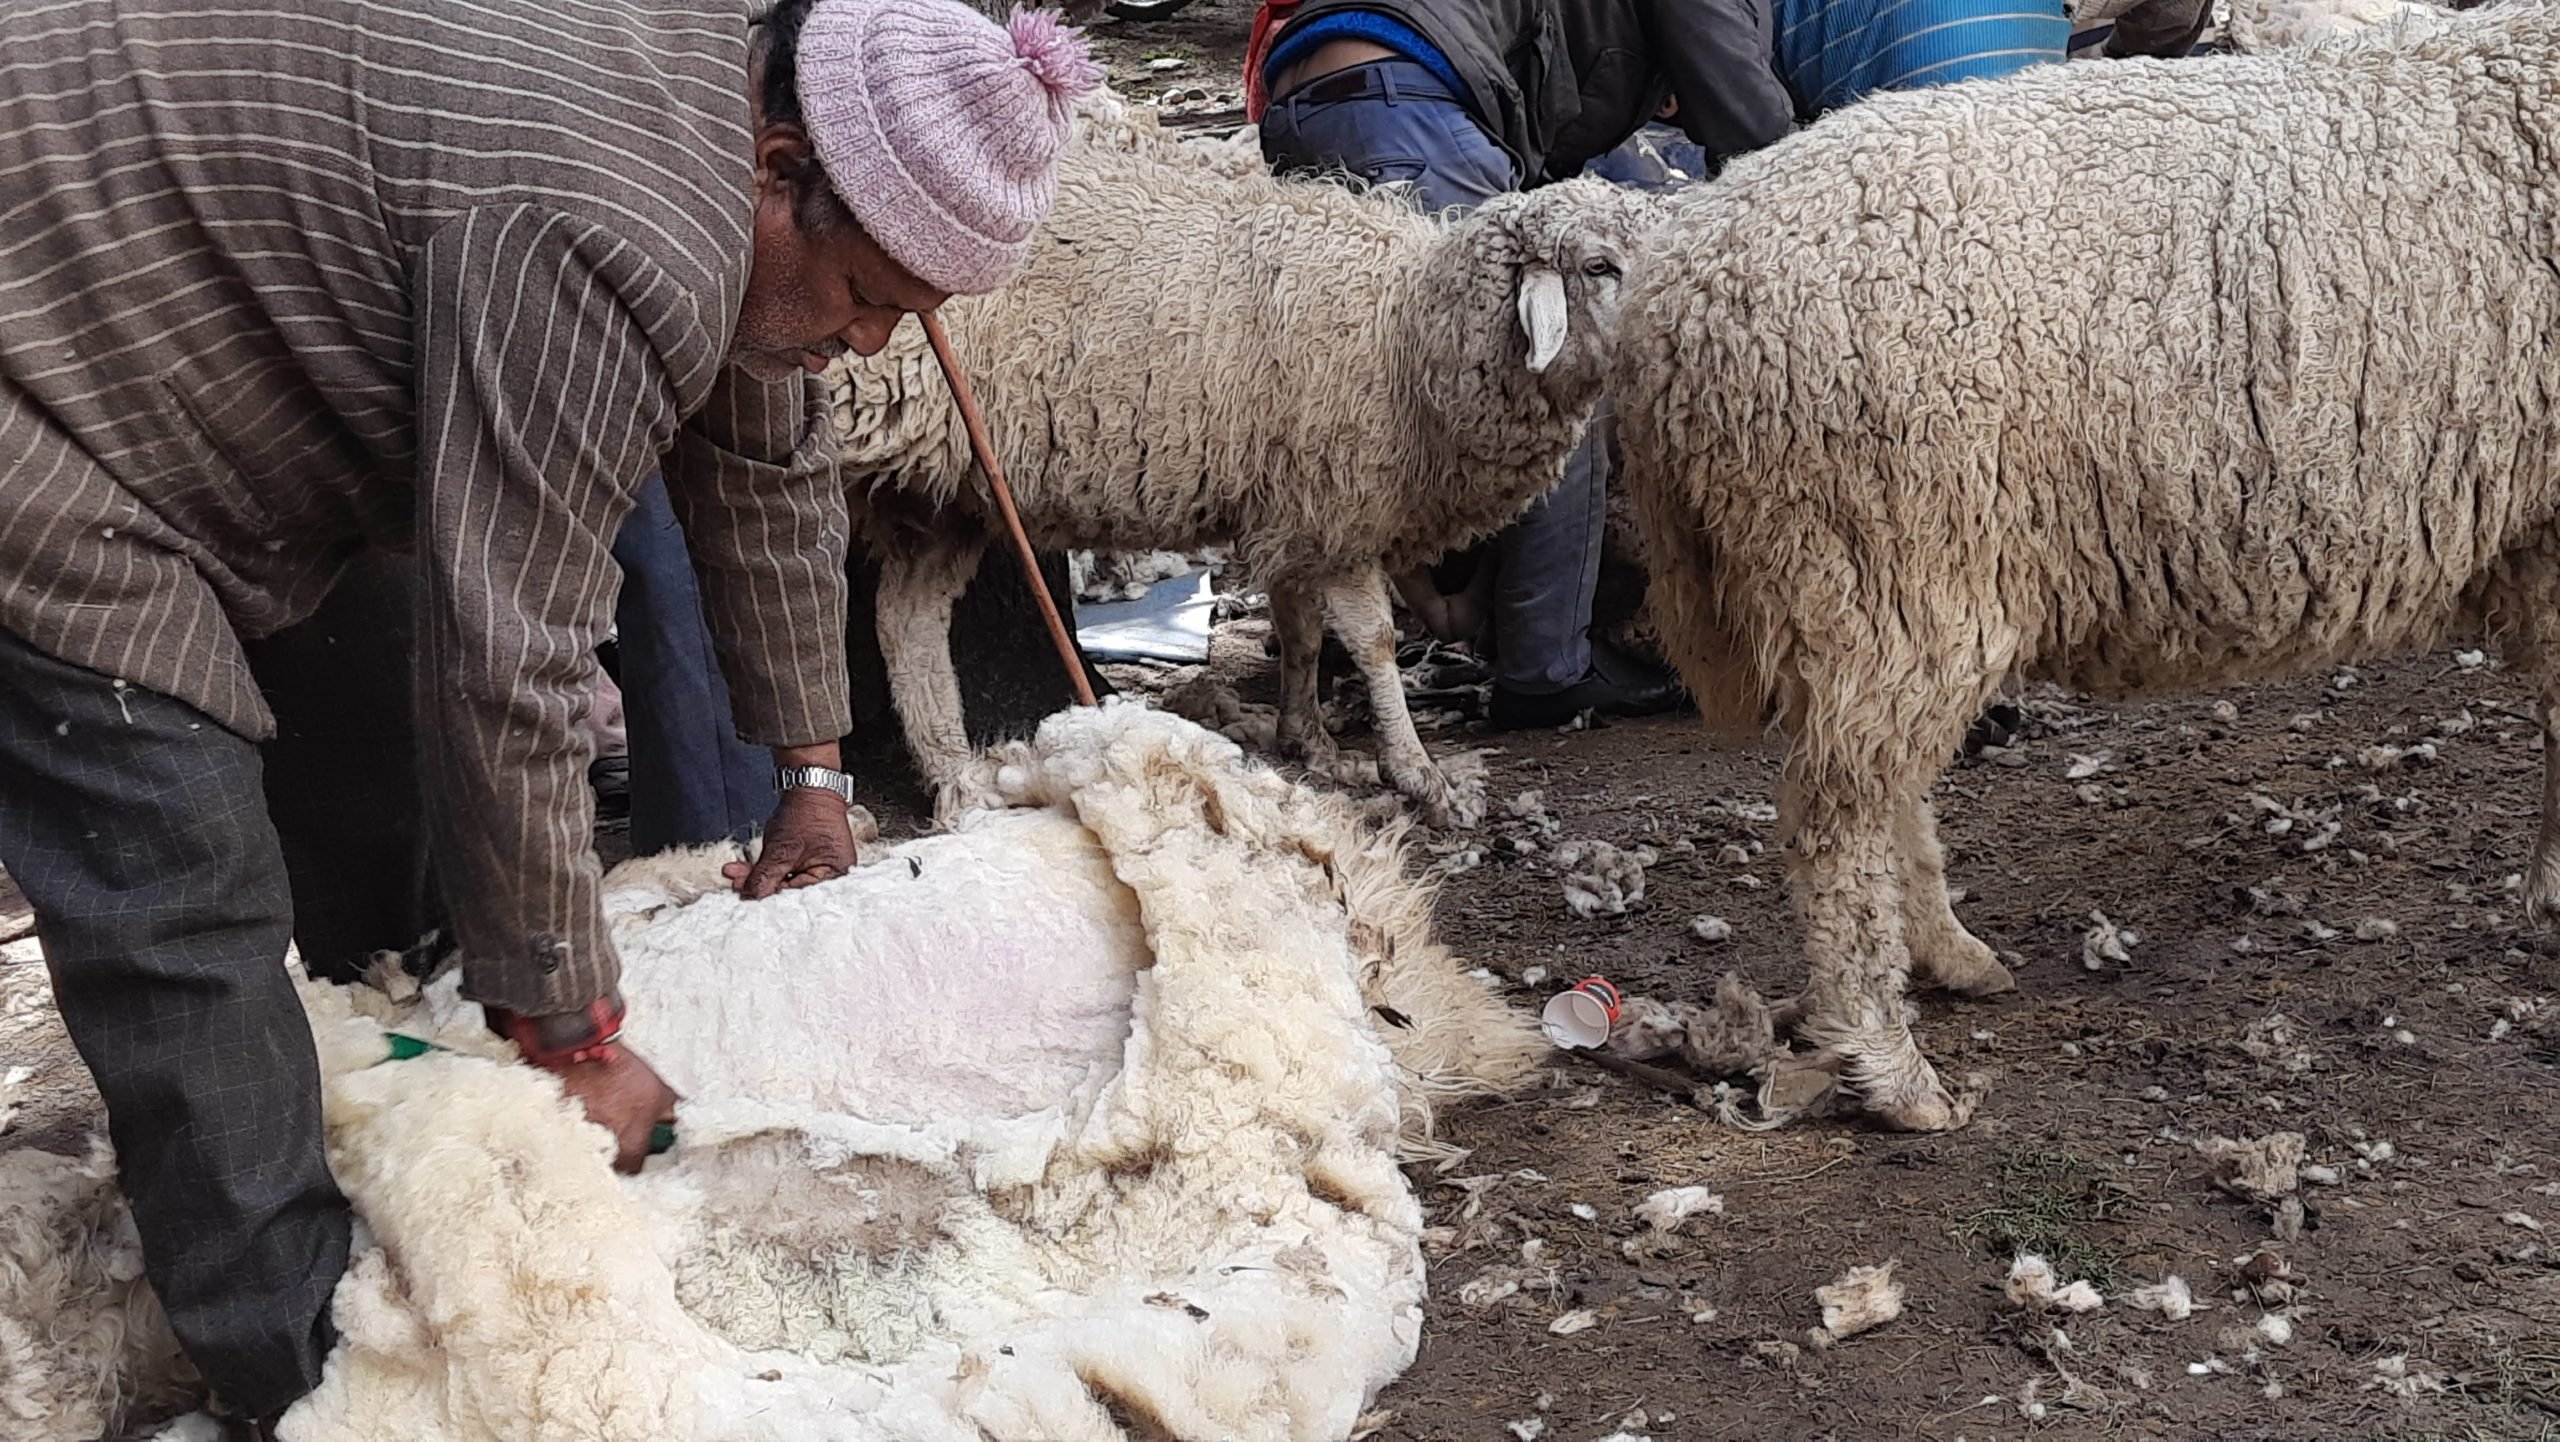 Wool shearing in Bagori village, Uttarakhand.